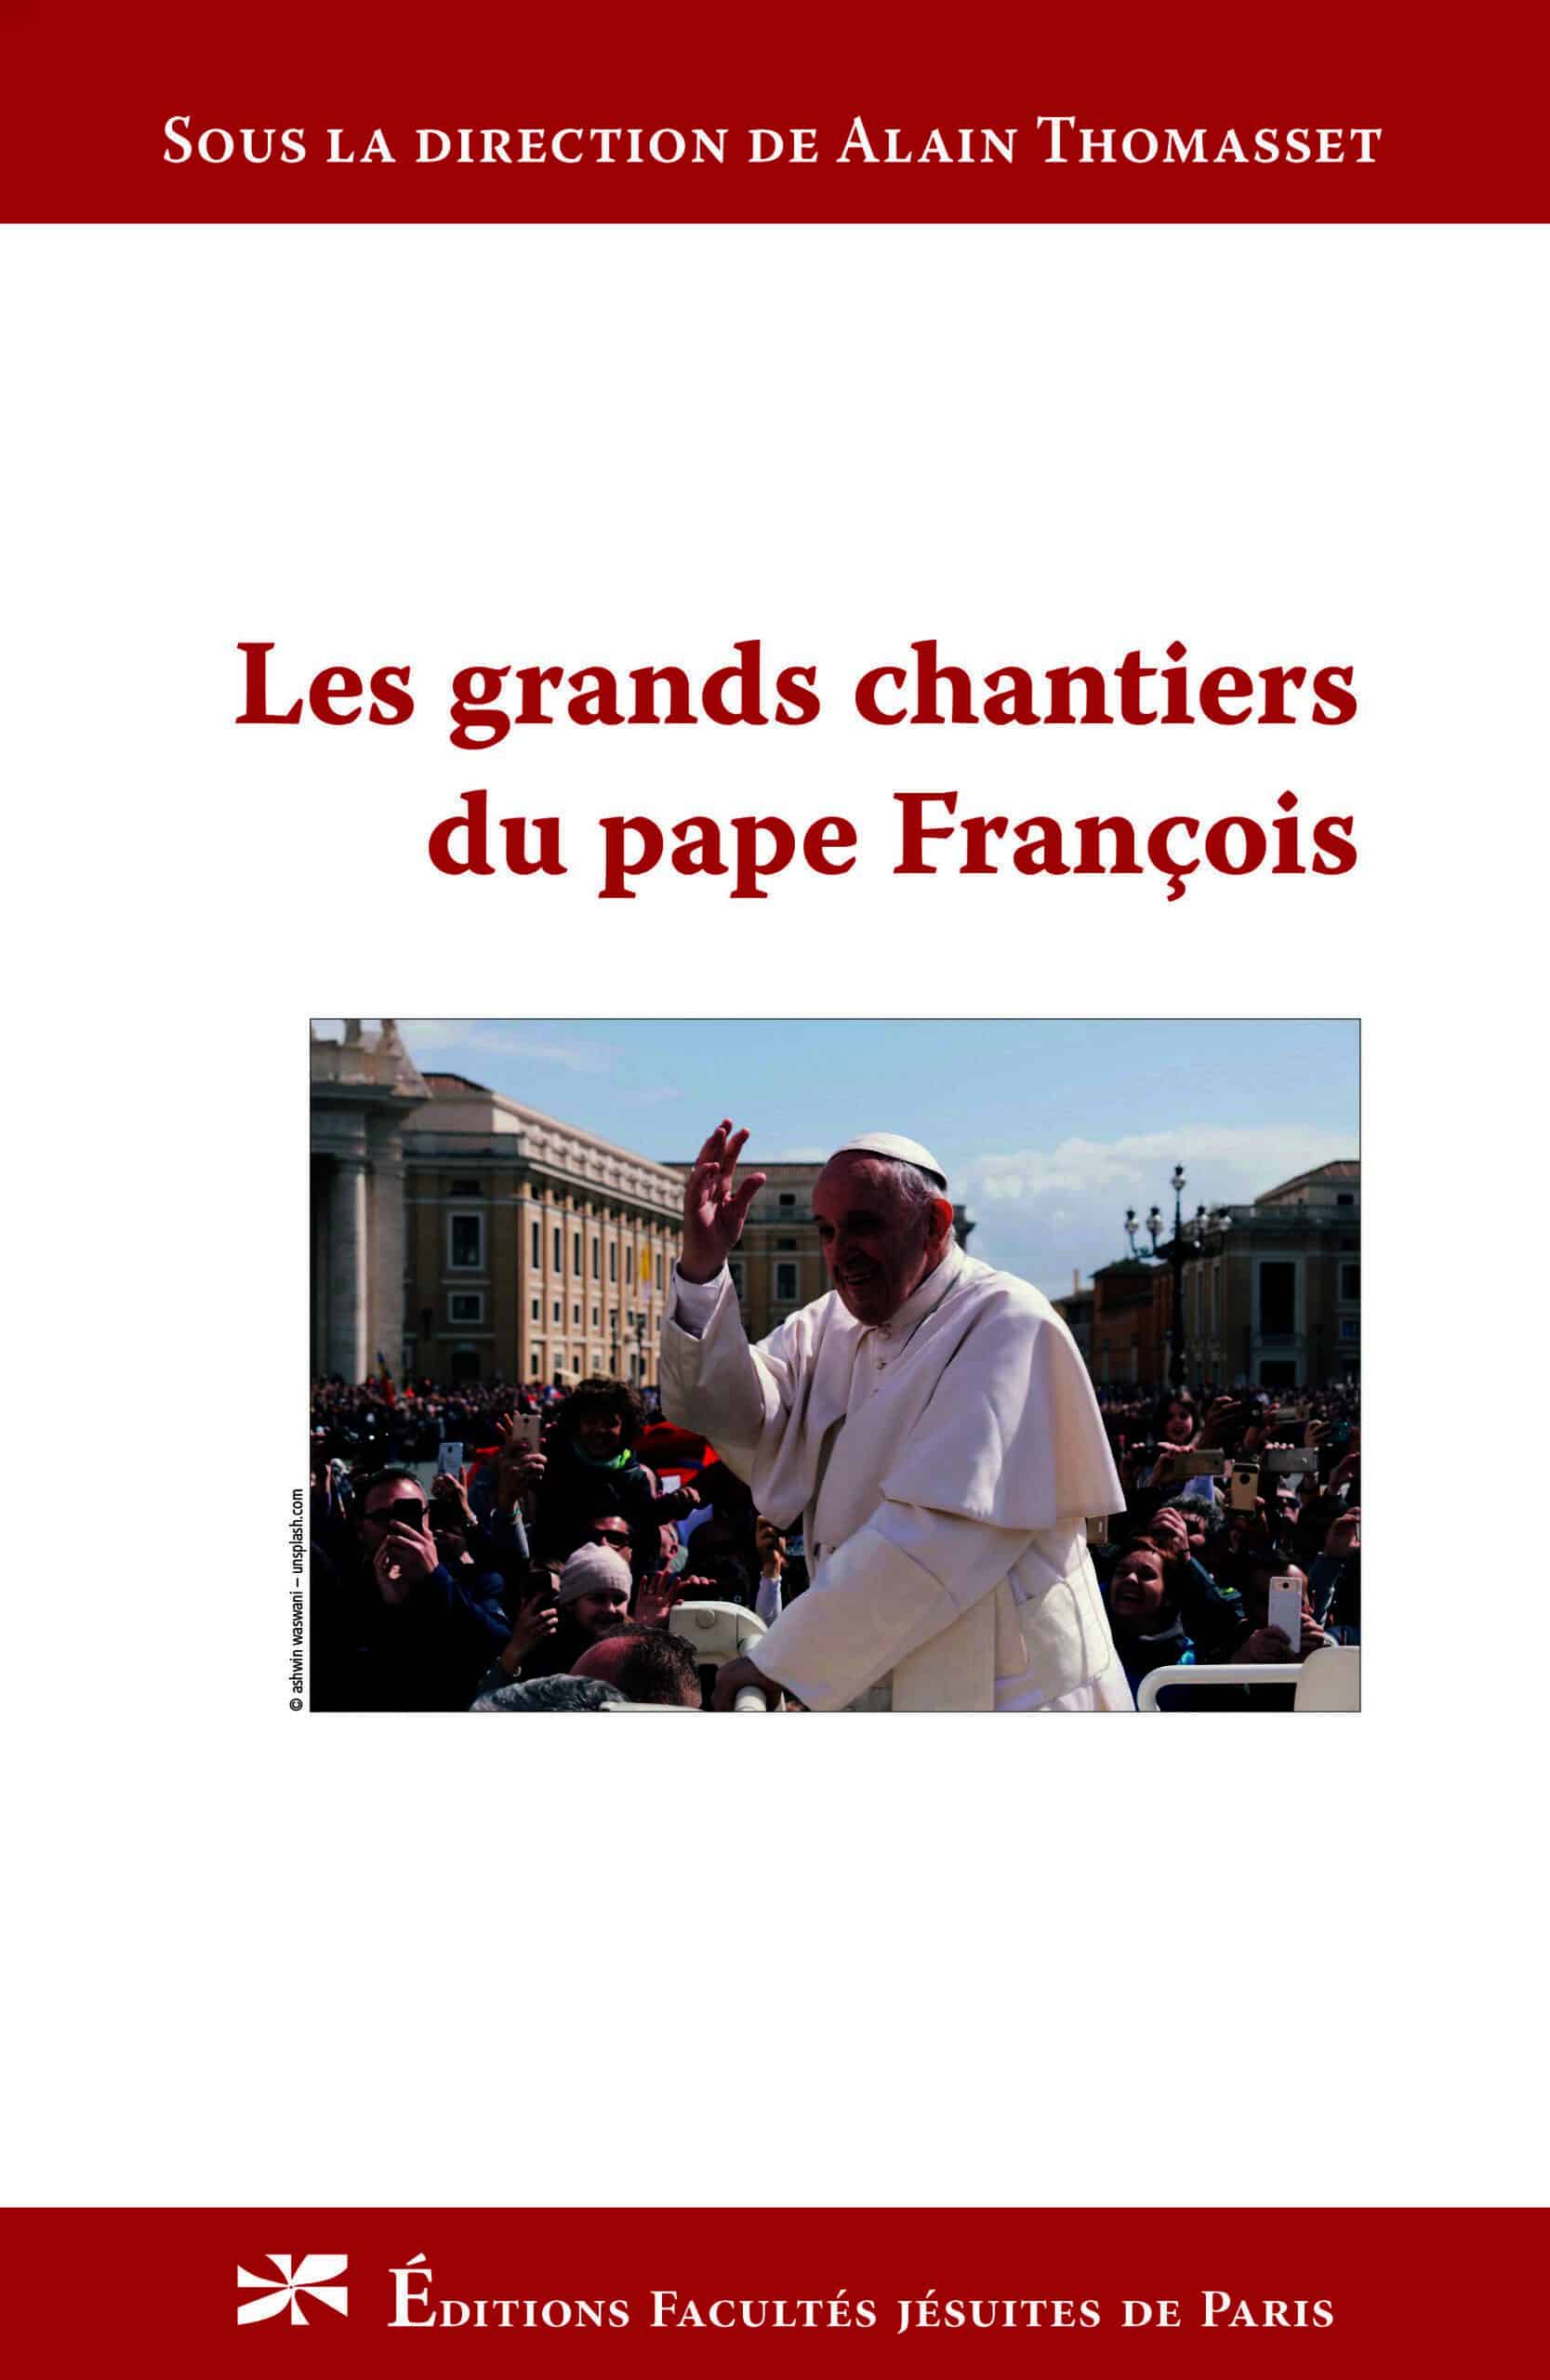 Les grands chantiers du pape François